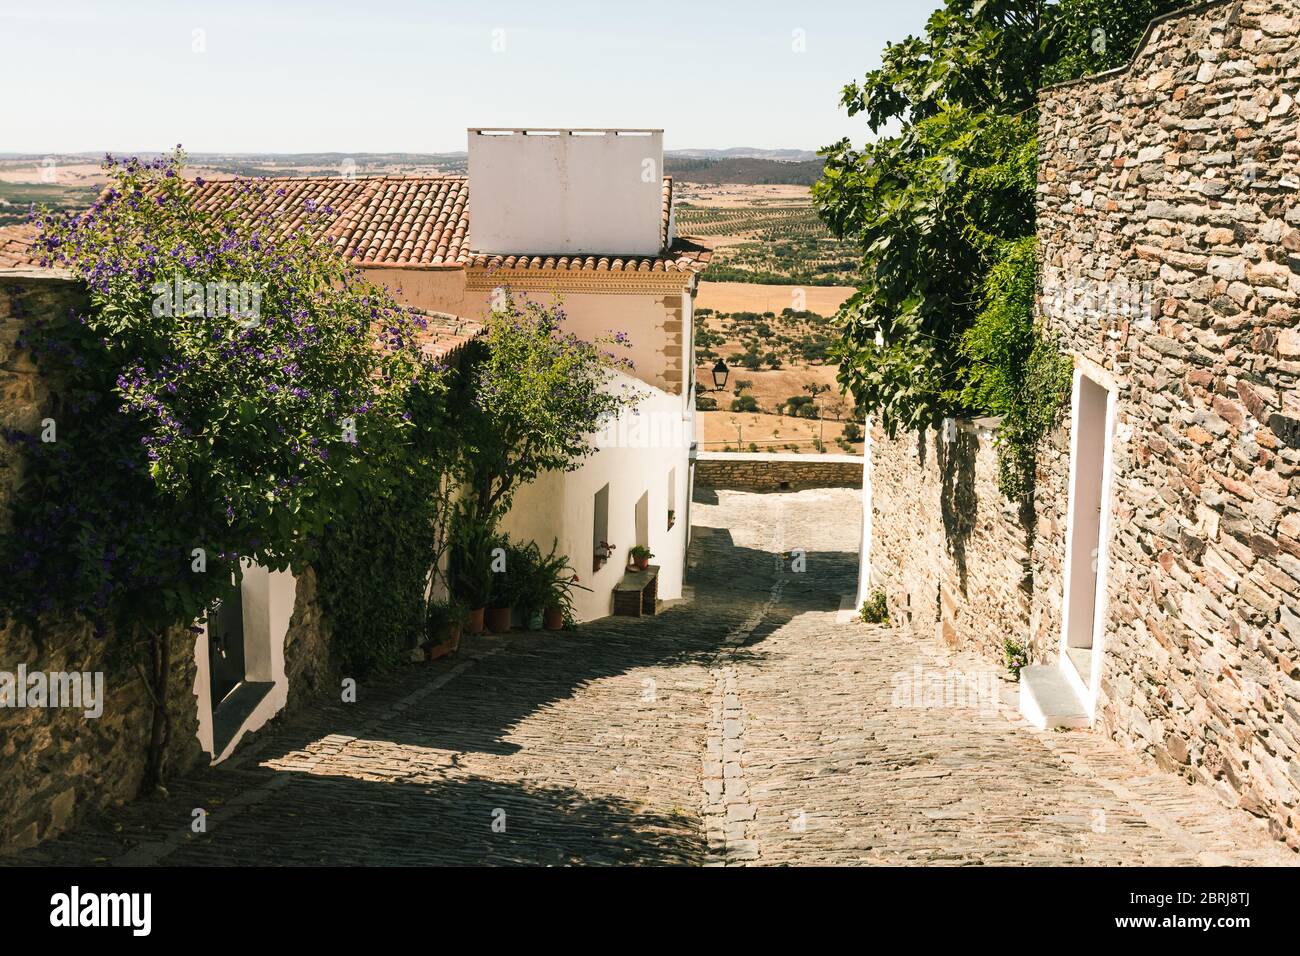 Rue dans le village de Monsaraz au Portugal, avec des plantes sur les murs. Maisons anciennes typiques de l'Alentejo, blanches et faites de schistes. Voyage méditerranéen Banque D'Images